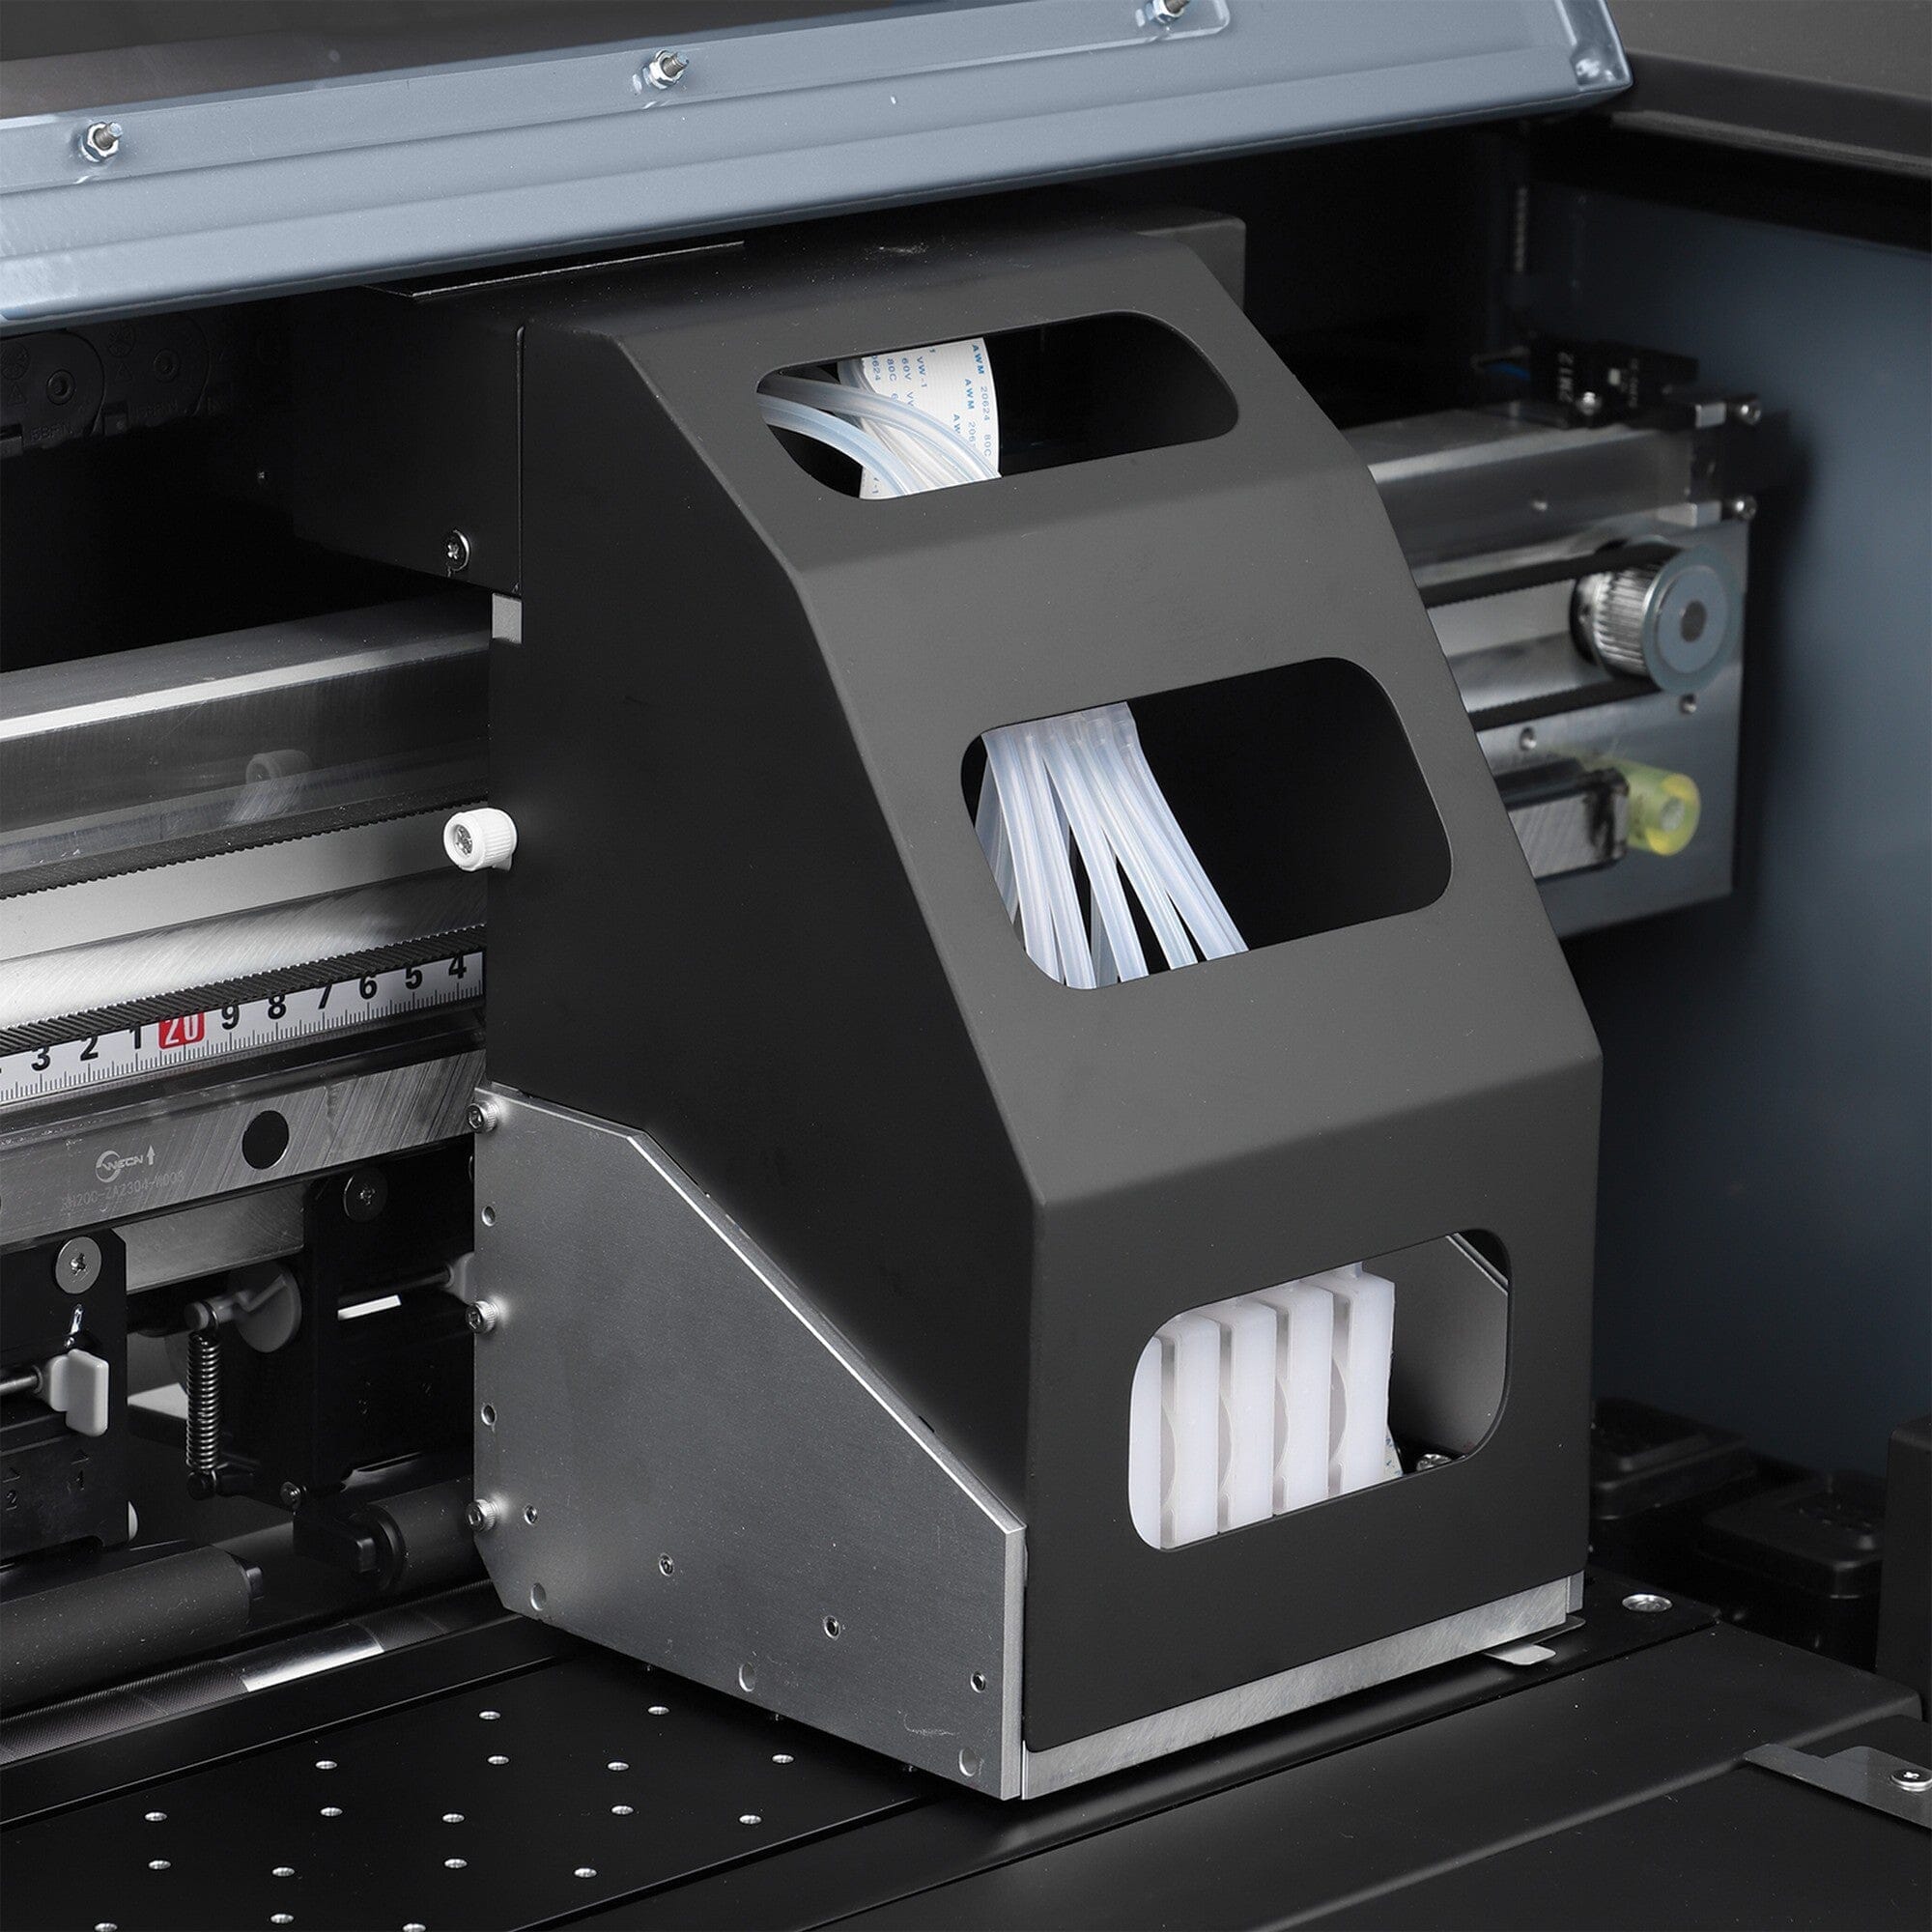 Prestige A4 DTF Printer Shaker and Oven Bundle